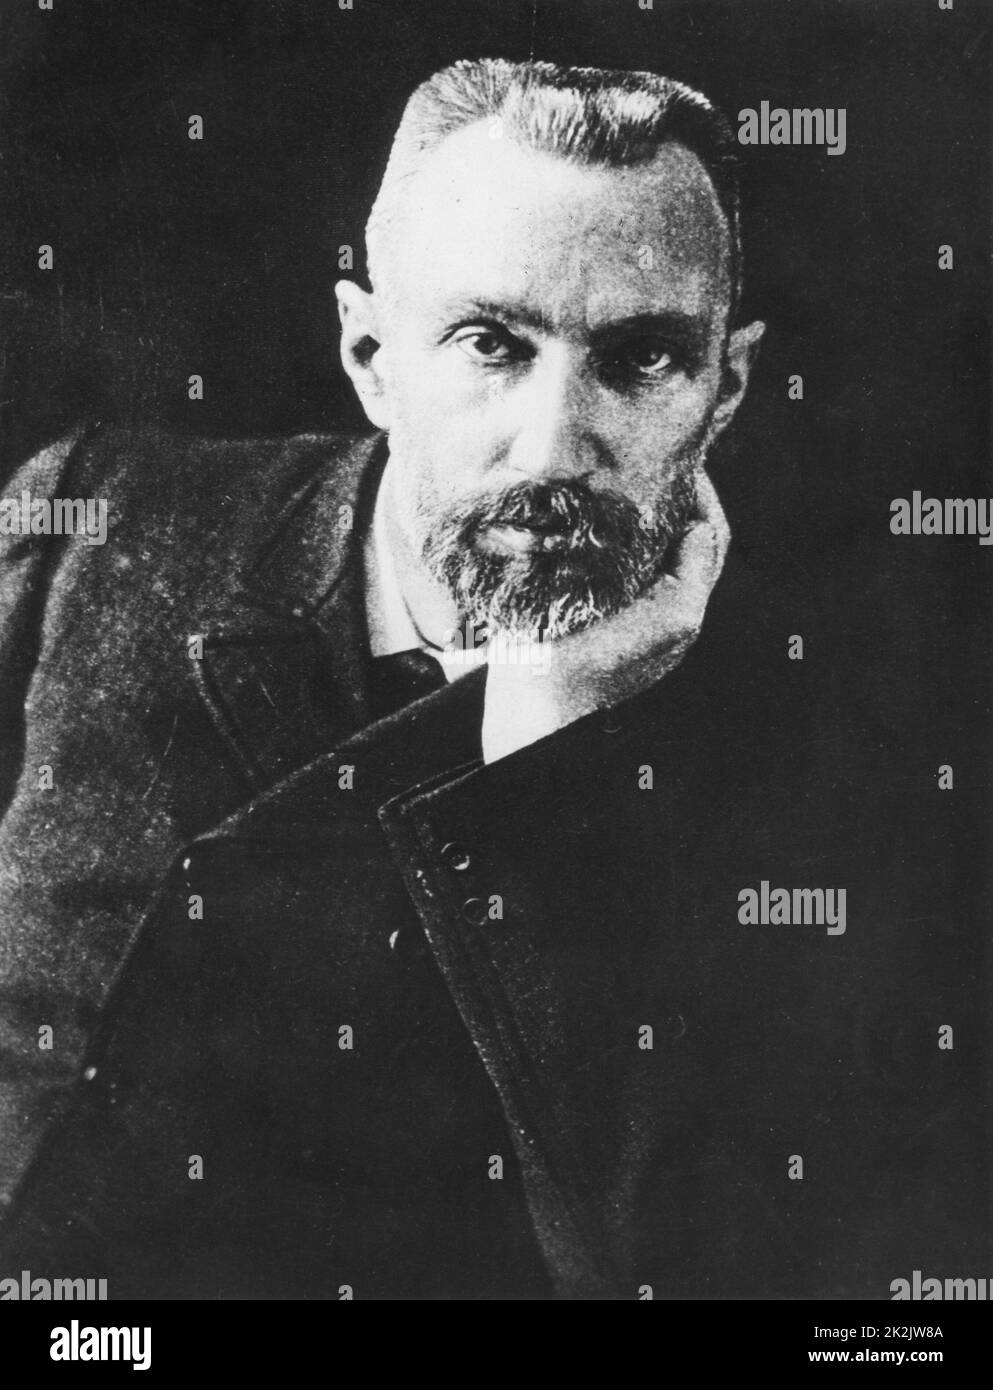 Pierre Curie (1859-1906), französischer Chemiker, Ehemann von Marie Curie. 1903 Nobelpreis für Physik mit Marie und Henri Becquerel für die Arbeit an Radioaktivität. Marie's Favorit Foto von Pierre. Stockfoto